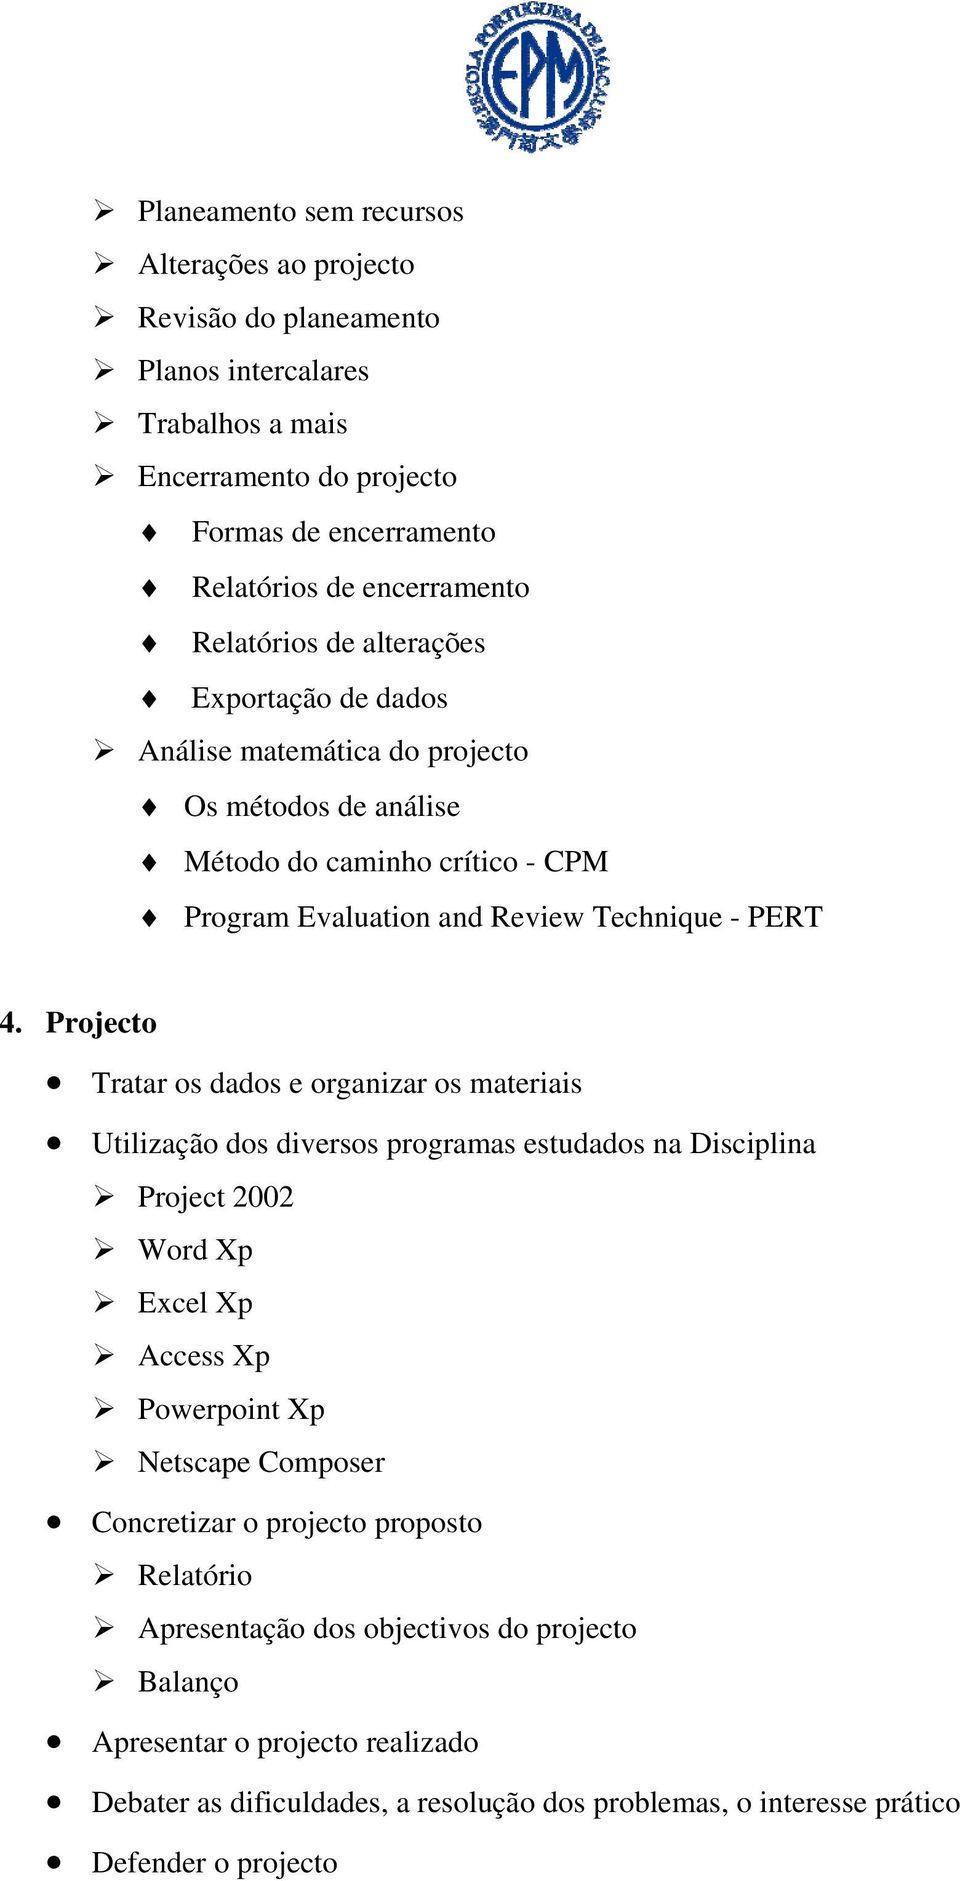 Projecto Tratar os dados e organizar os materiais Utilização dos diversos programas estudados na Disciplina Project 2002 Word Xp Excel Xp Access Xp Powerpoint Xp Netscape Composer